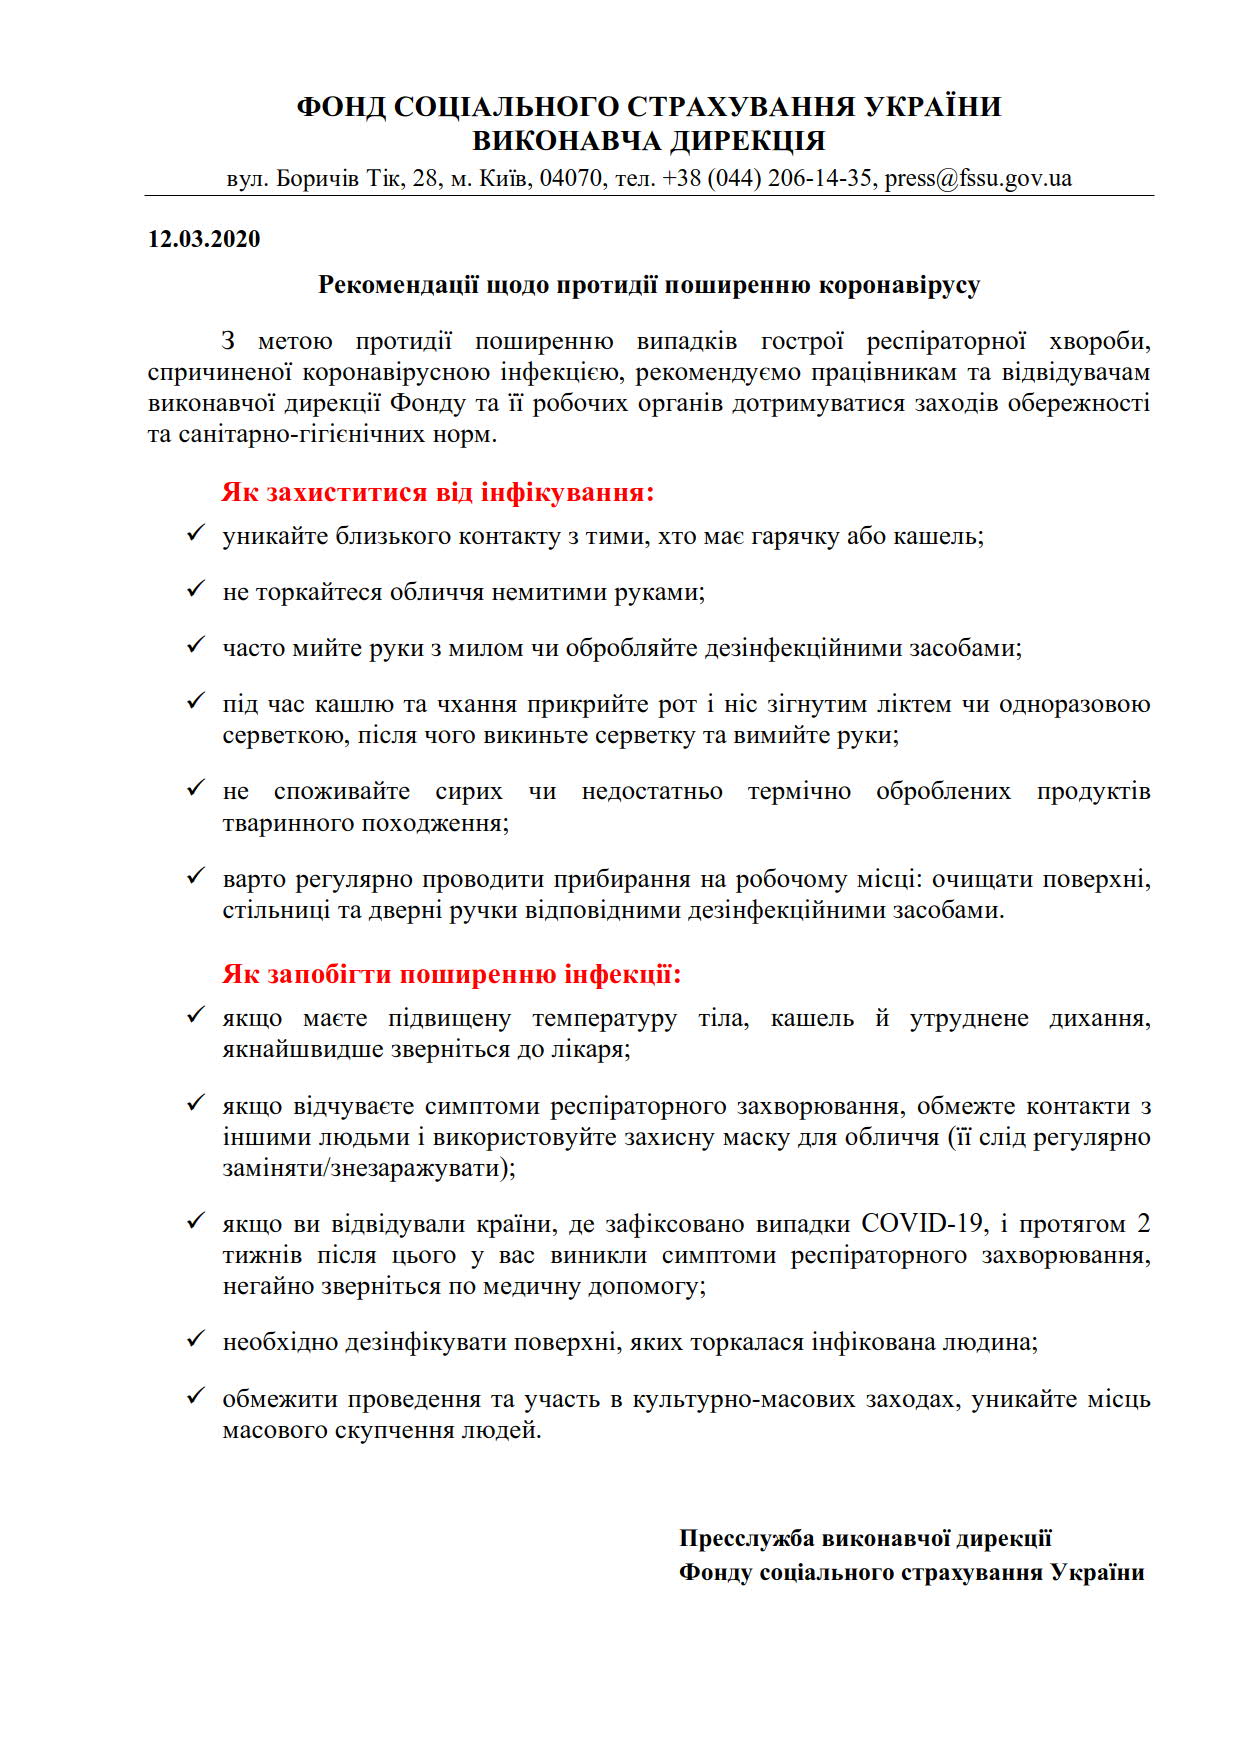 ФССУ_Коронавірусна інфекція рекомендації_1